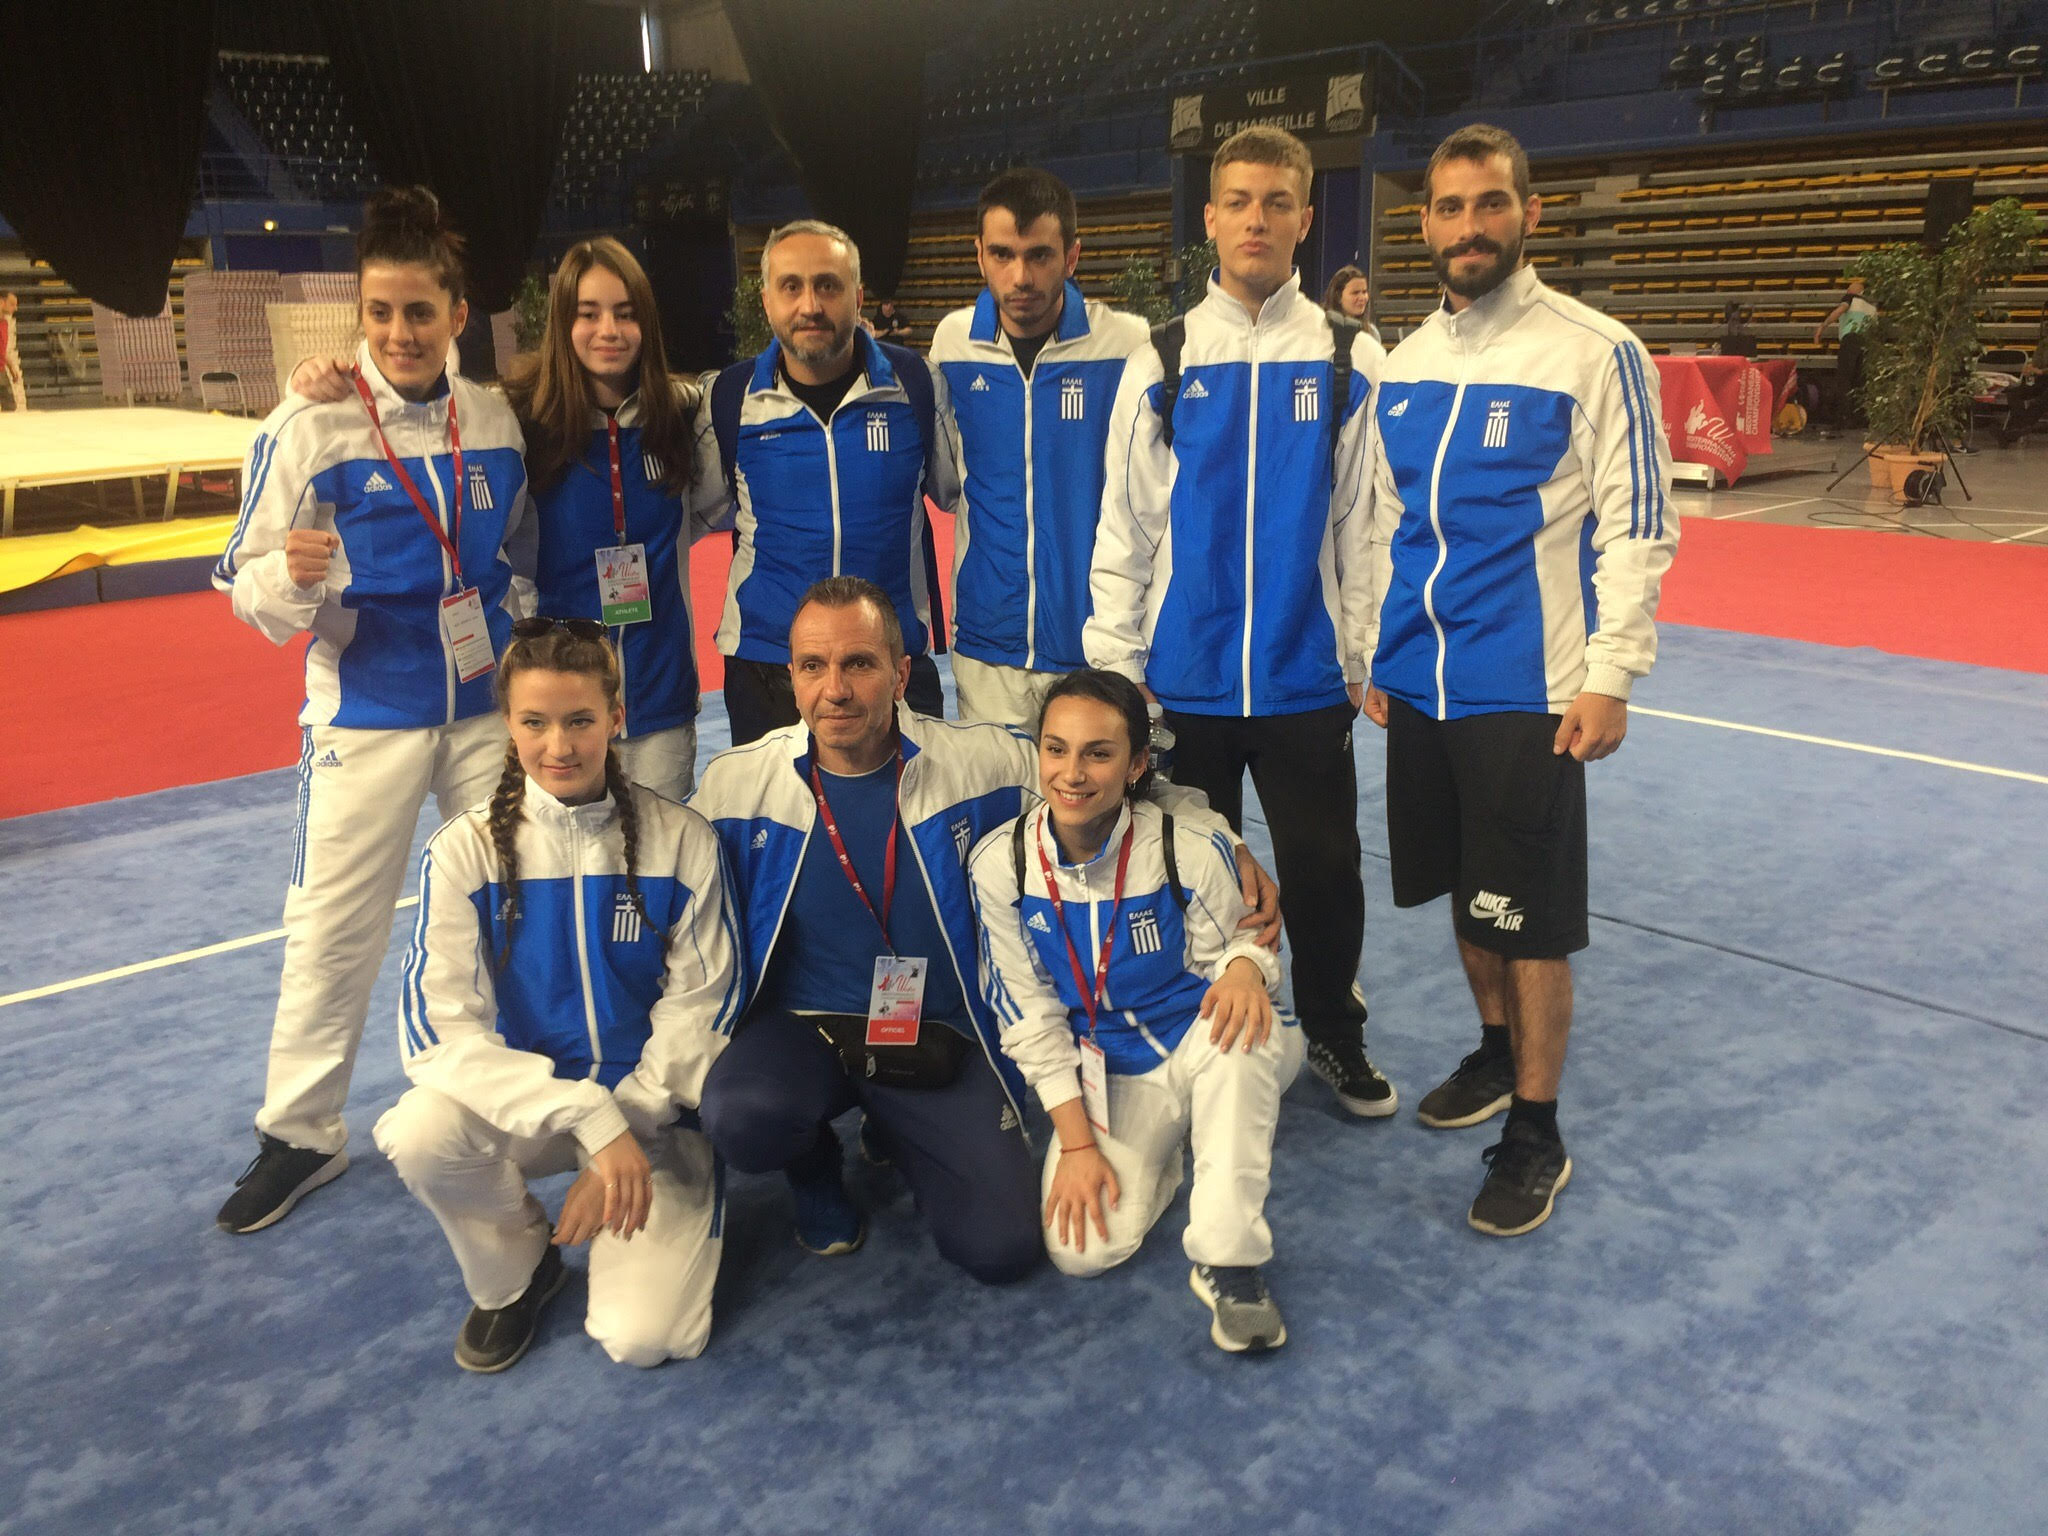 Μεγάλες νίκες έκαναν οι αθλητές του Α.Σ. ΑΤΡΑΠΟΣ Ν. Κόσμου (προπονητής Κώστας Γεωργίου) στο 2ο Μεσογειακό Πρωτάθλημα Wushu